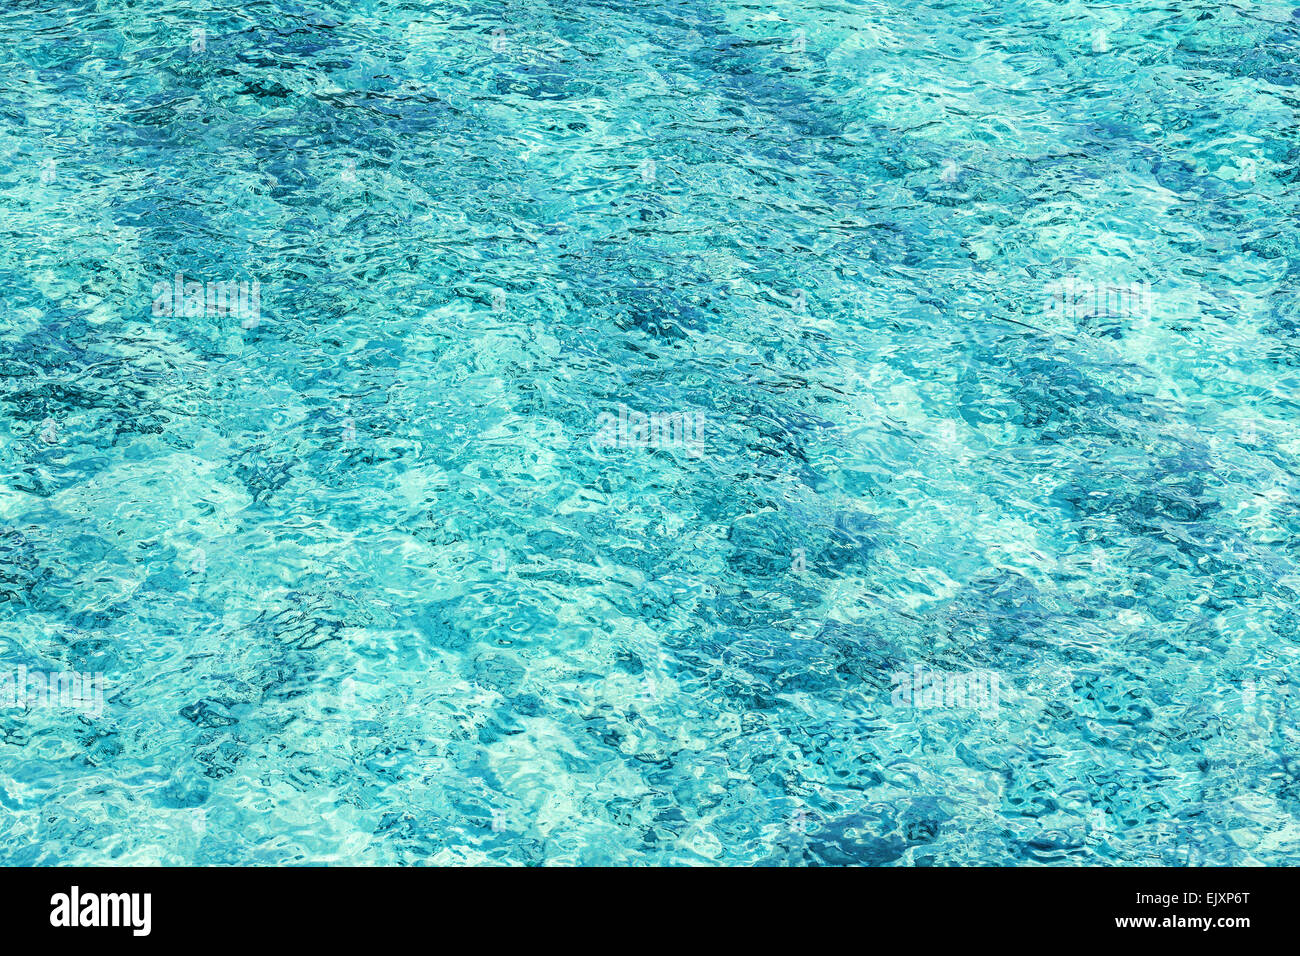 Zusammenfassung Hintergrund des kristallklaren Meerwassers gemacht. Stockfoto